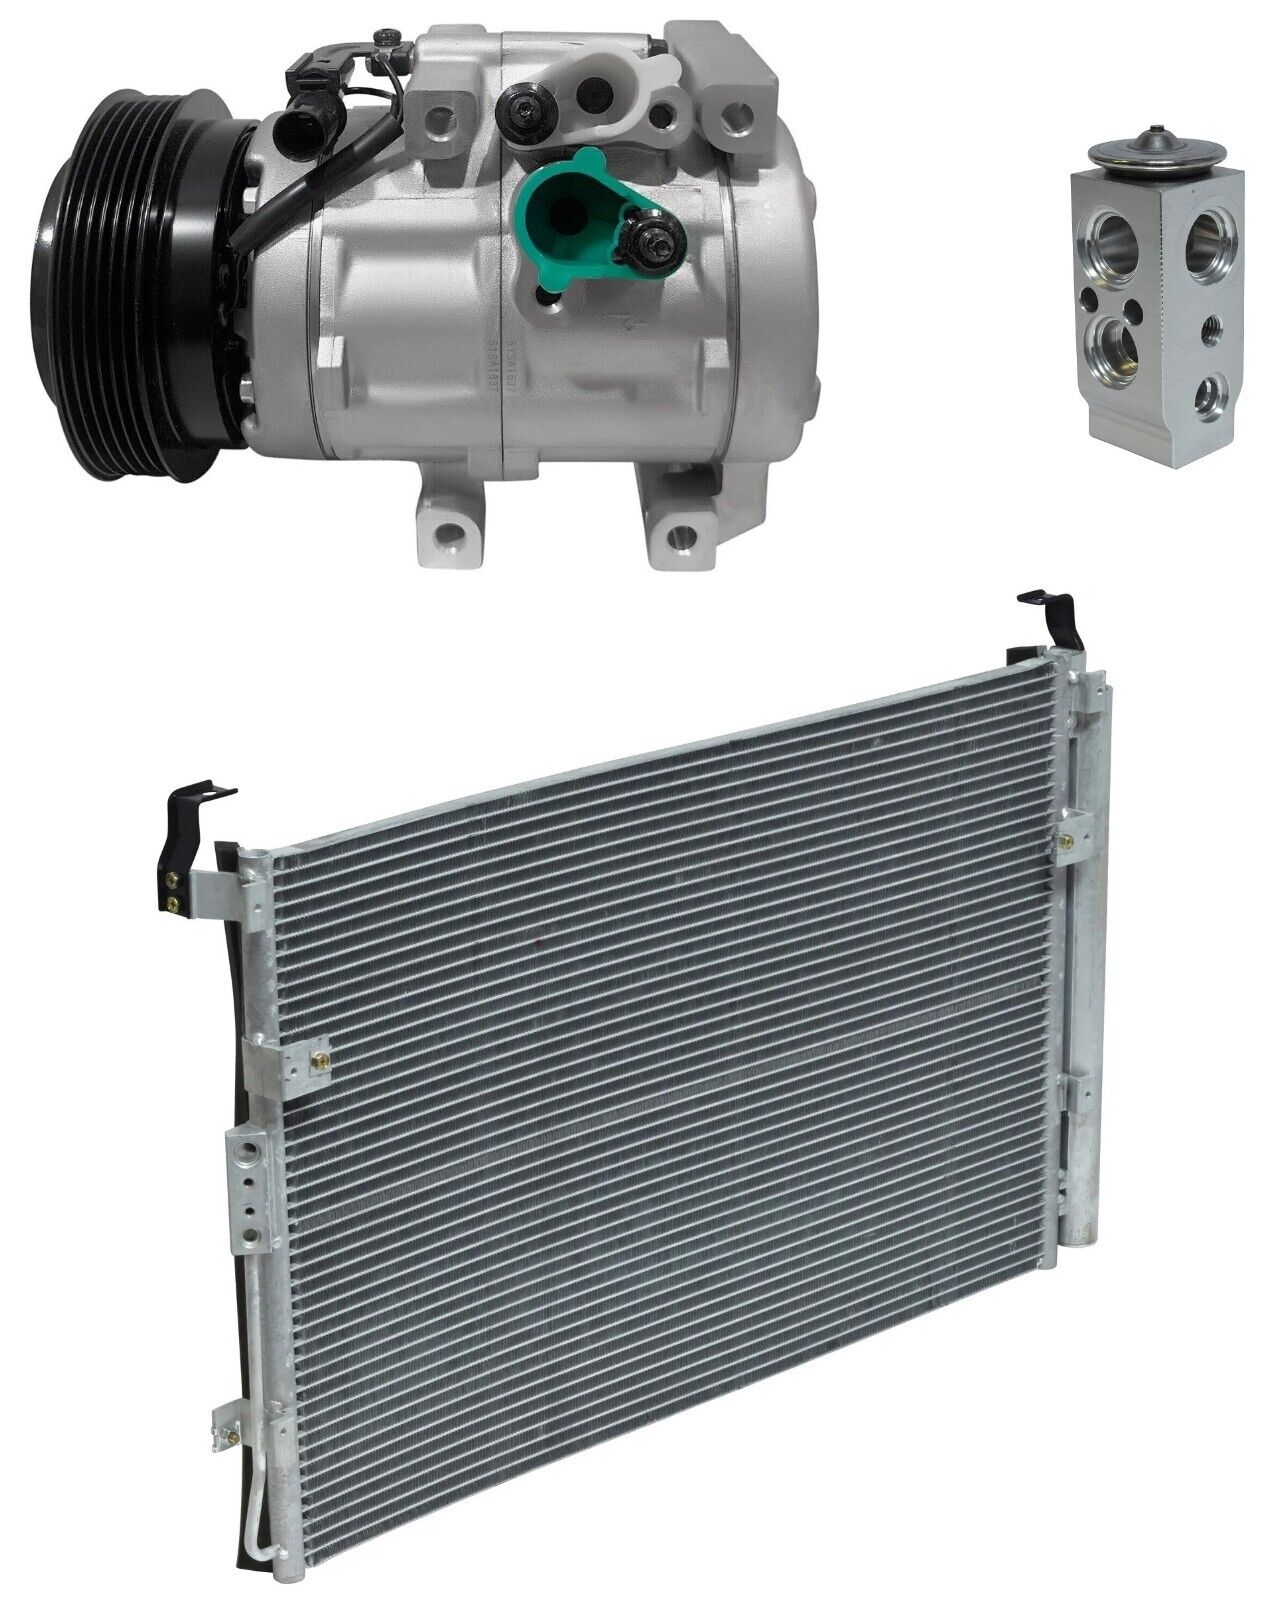 BRAND NEW RYC AC Compressor Kit W/ Condenser EG47A-N Fits Kia Sedona 3.8L 2009